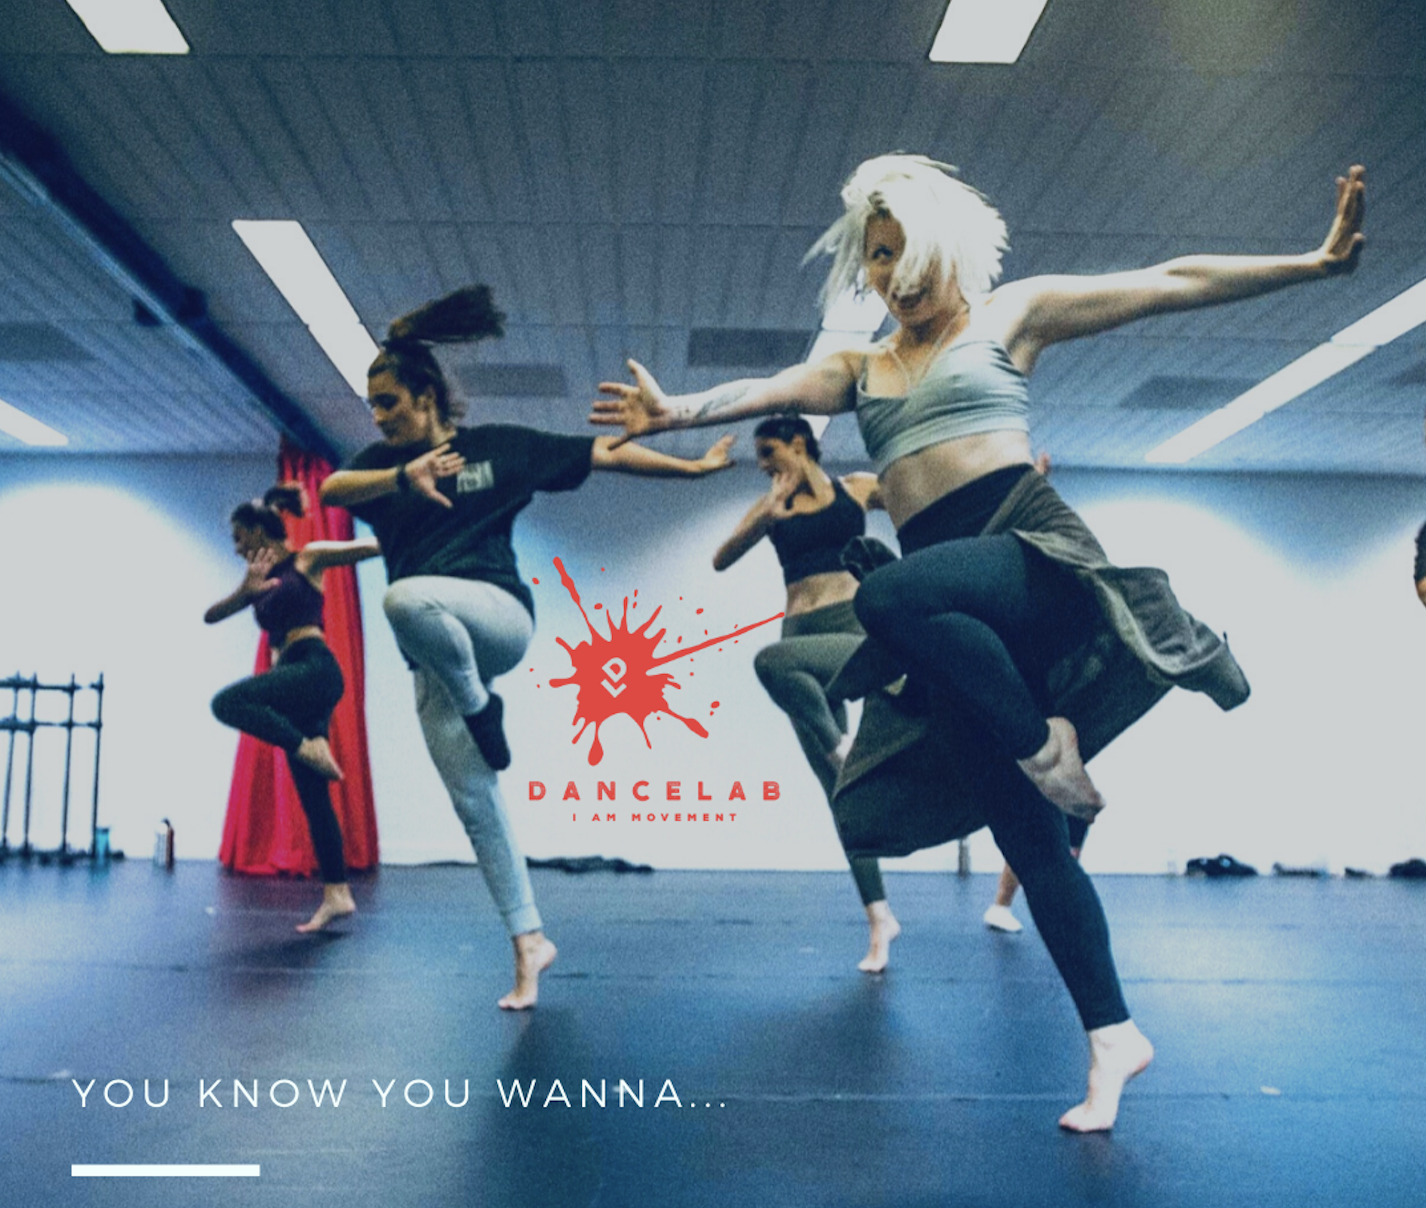 Classes we offer – Queen City Dance Academy